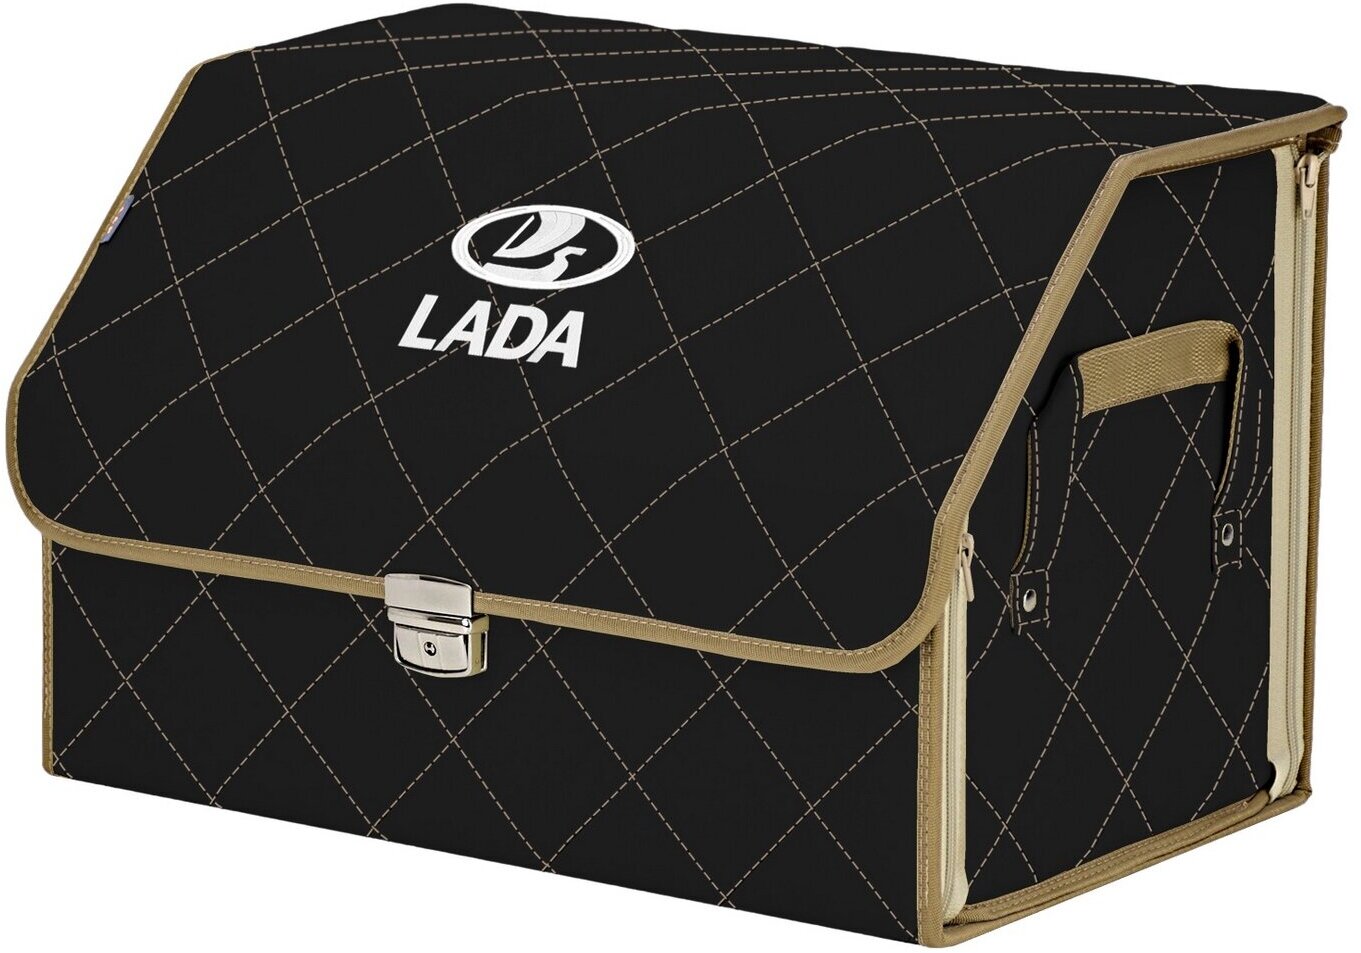 Органайзер-саквояж в багажник "Союз Премиум" (размер L). Цвет: черный с бежевой прострочкой Ромб и вышивкой LADA (лада).